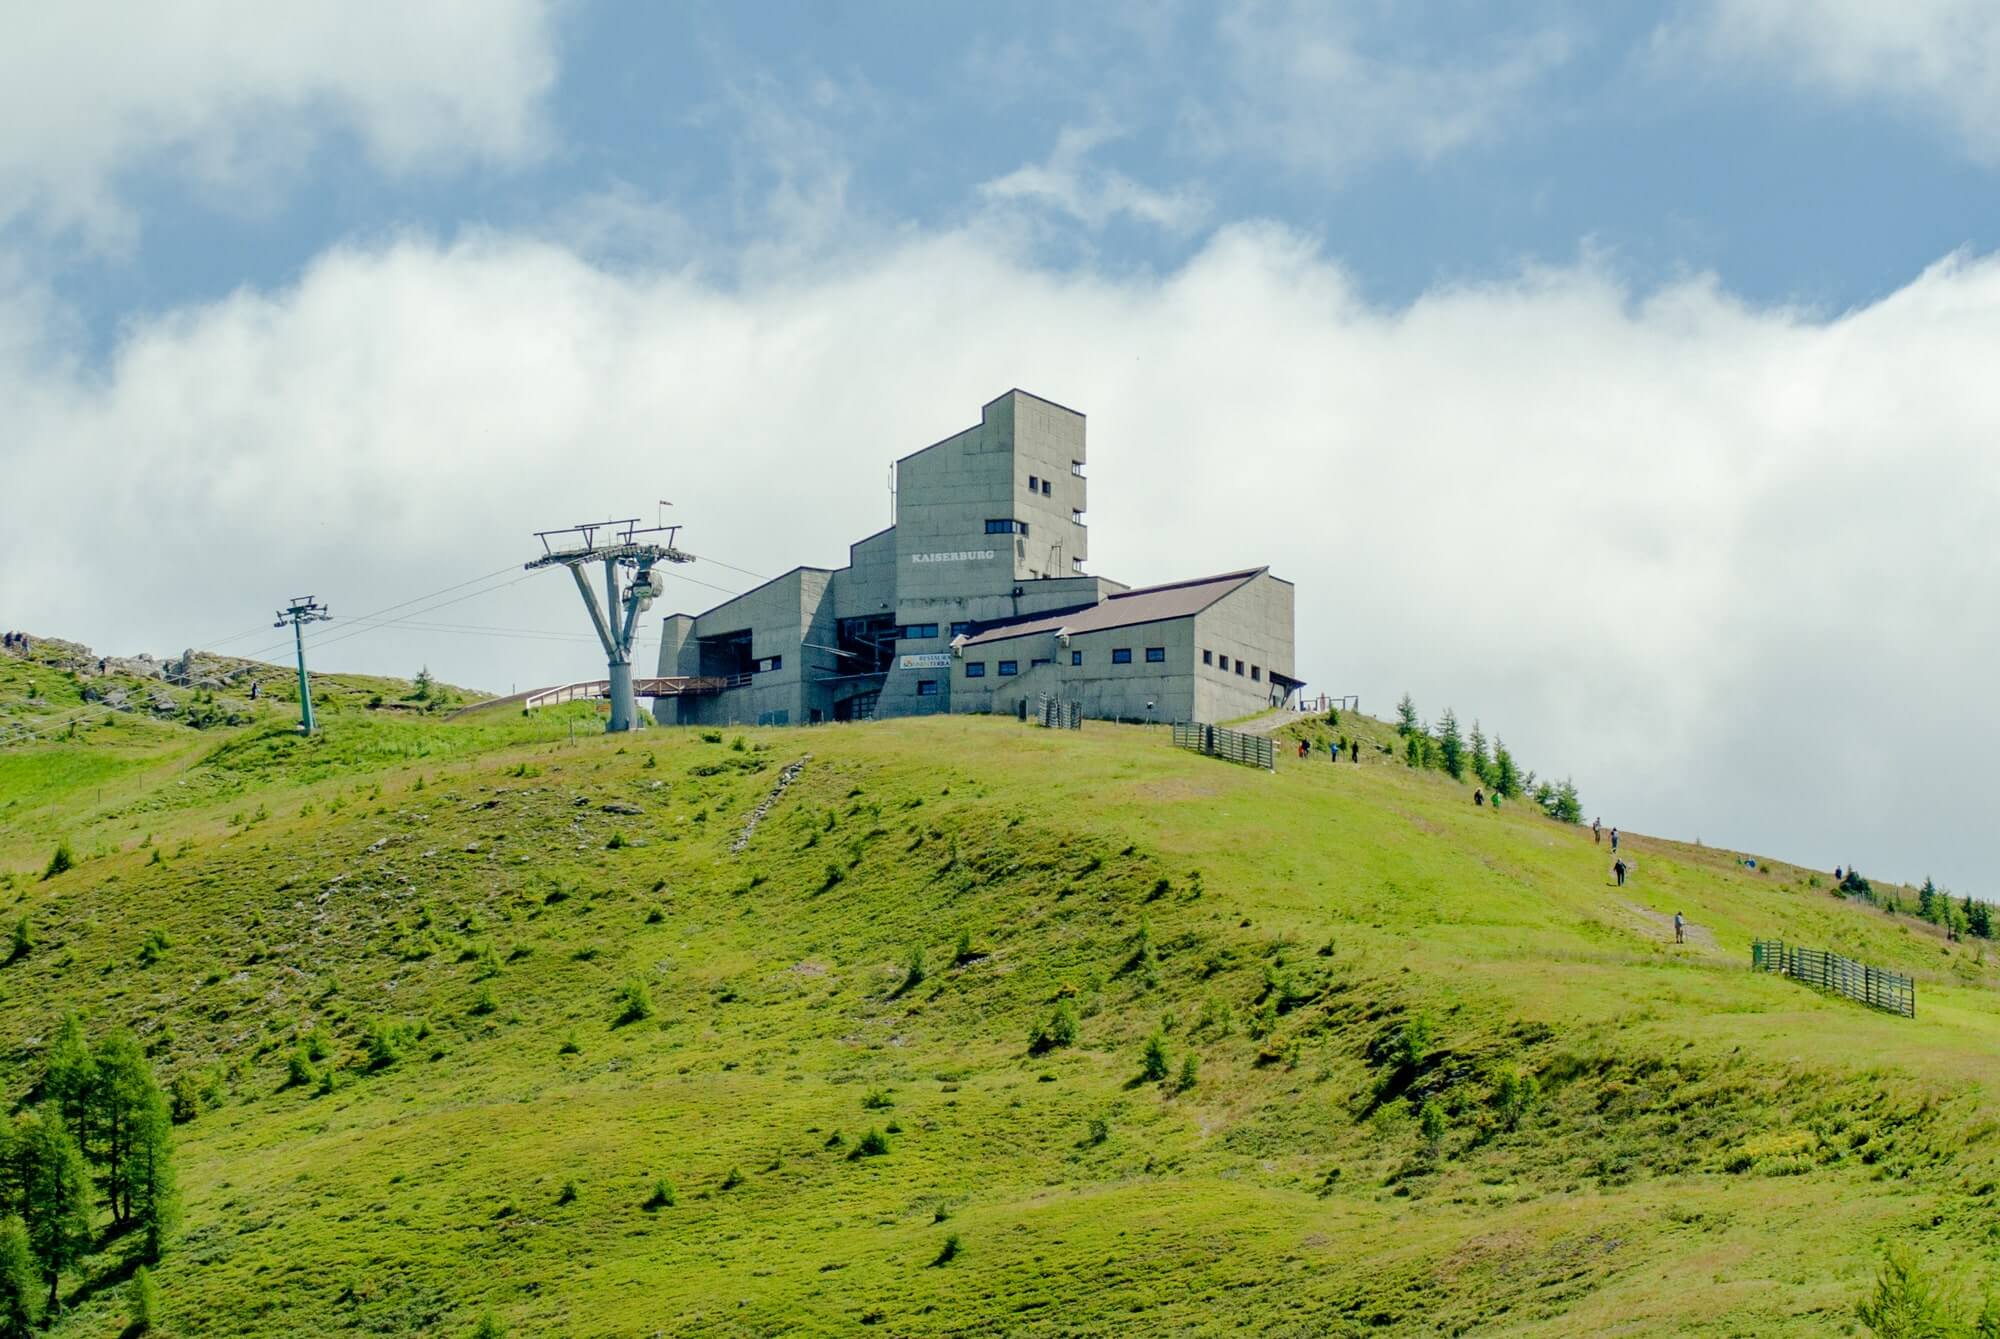 Auf dem Gipfel eines Berges thront die Bergstation der Seilbahn - die Kaiserburg